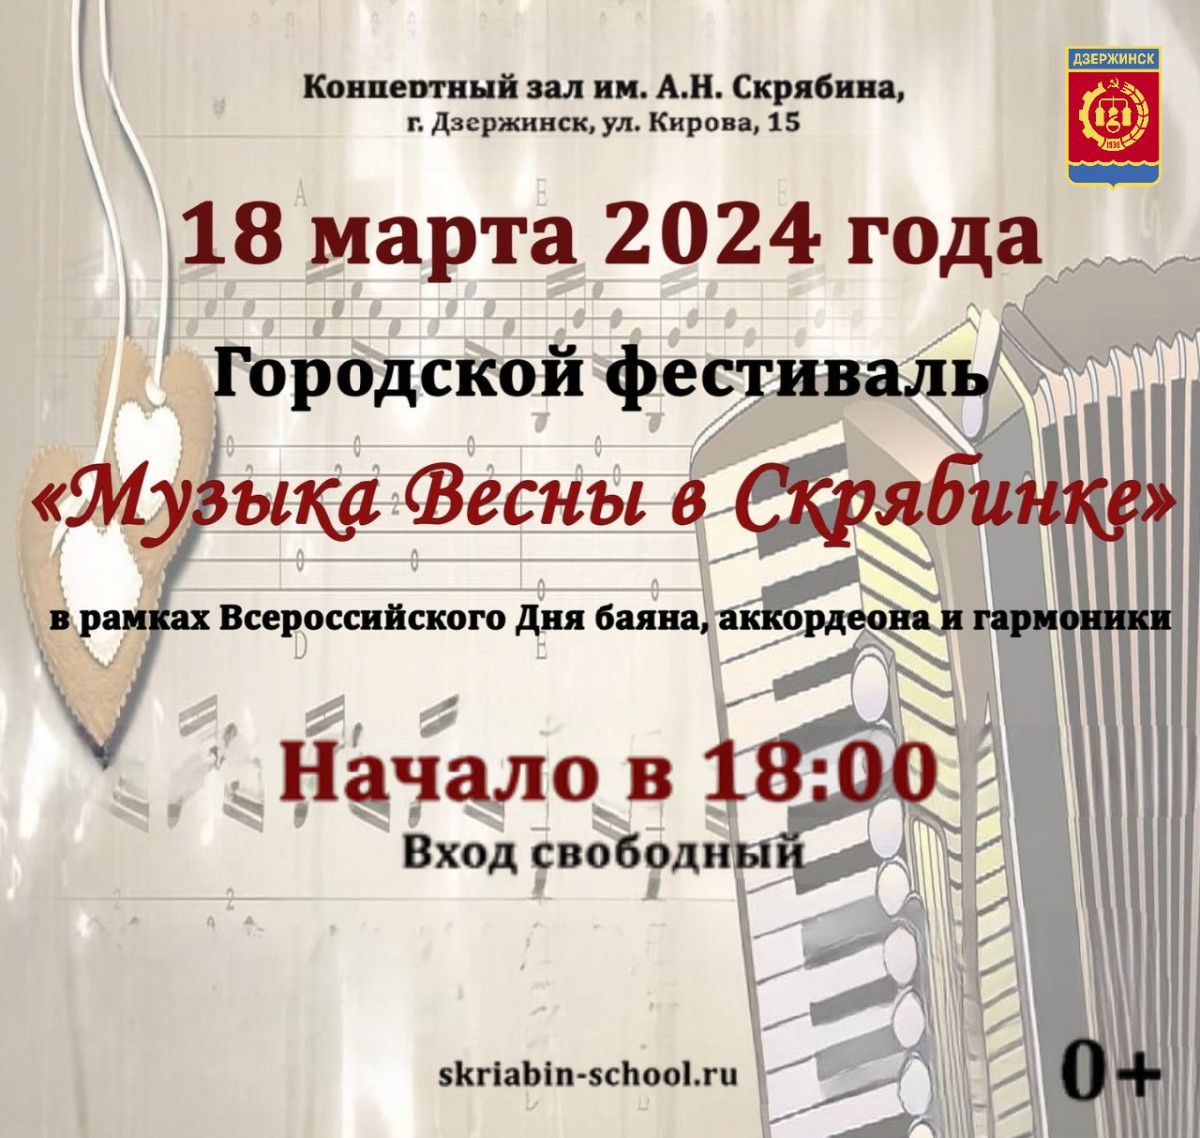 Фестиваль «Музыка весны в Скрябинке» объединит музыкантов в Дзержинске